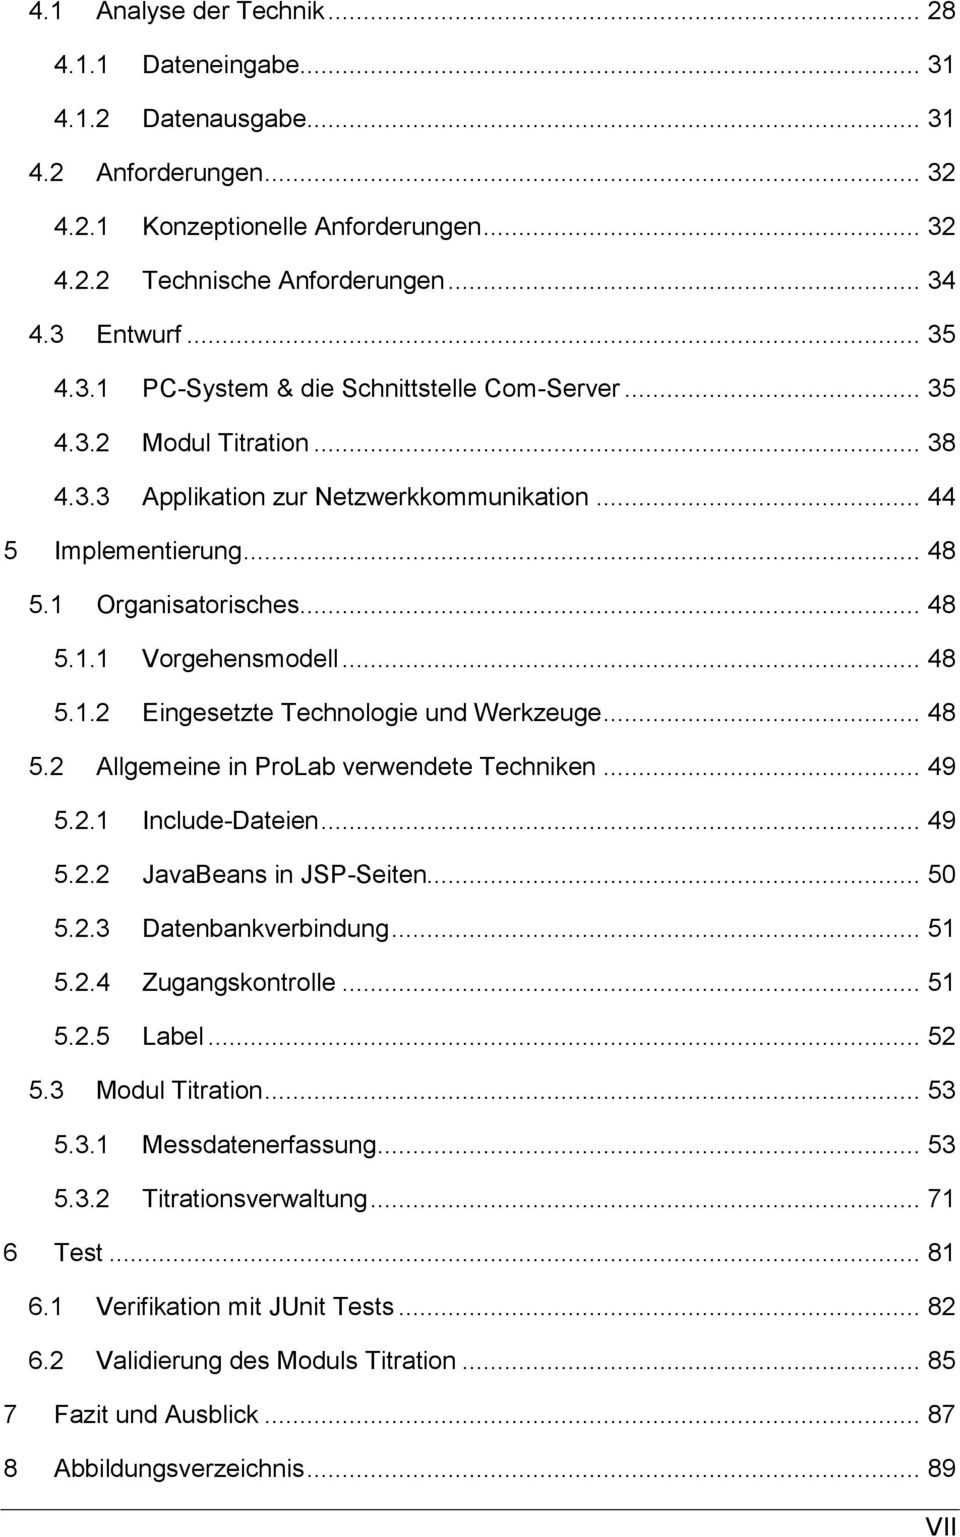 2 Allgemeine in ProLab verwendete Techniken 49 5.2.1 Include-Dateien. 49 5.2.2 JavaBeans in JSP-Seiten. 50 5.2.3 Datenbankverbindung 51 5.2.4 Zugangskontrolle. 51 5.2.5 Label.. 52 5.